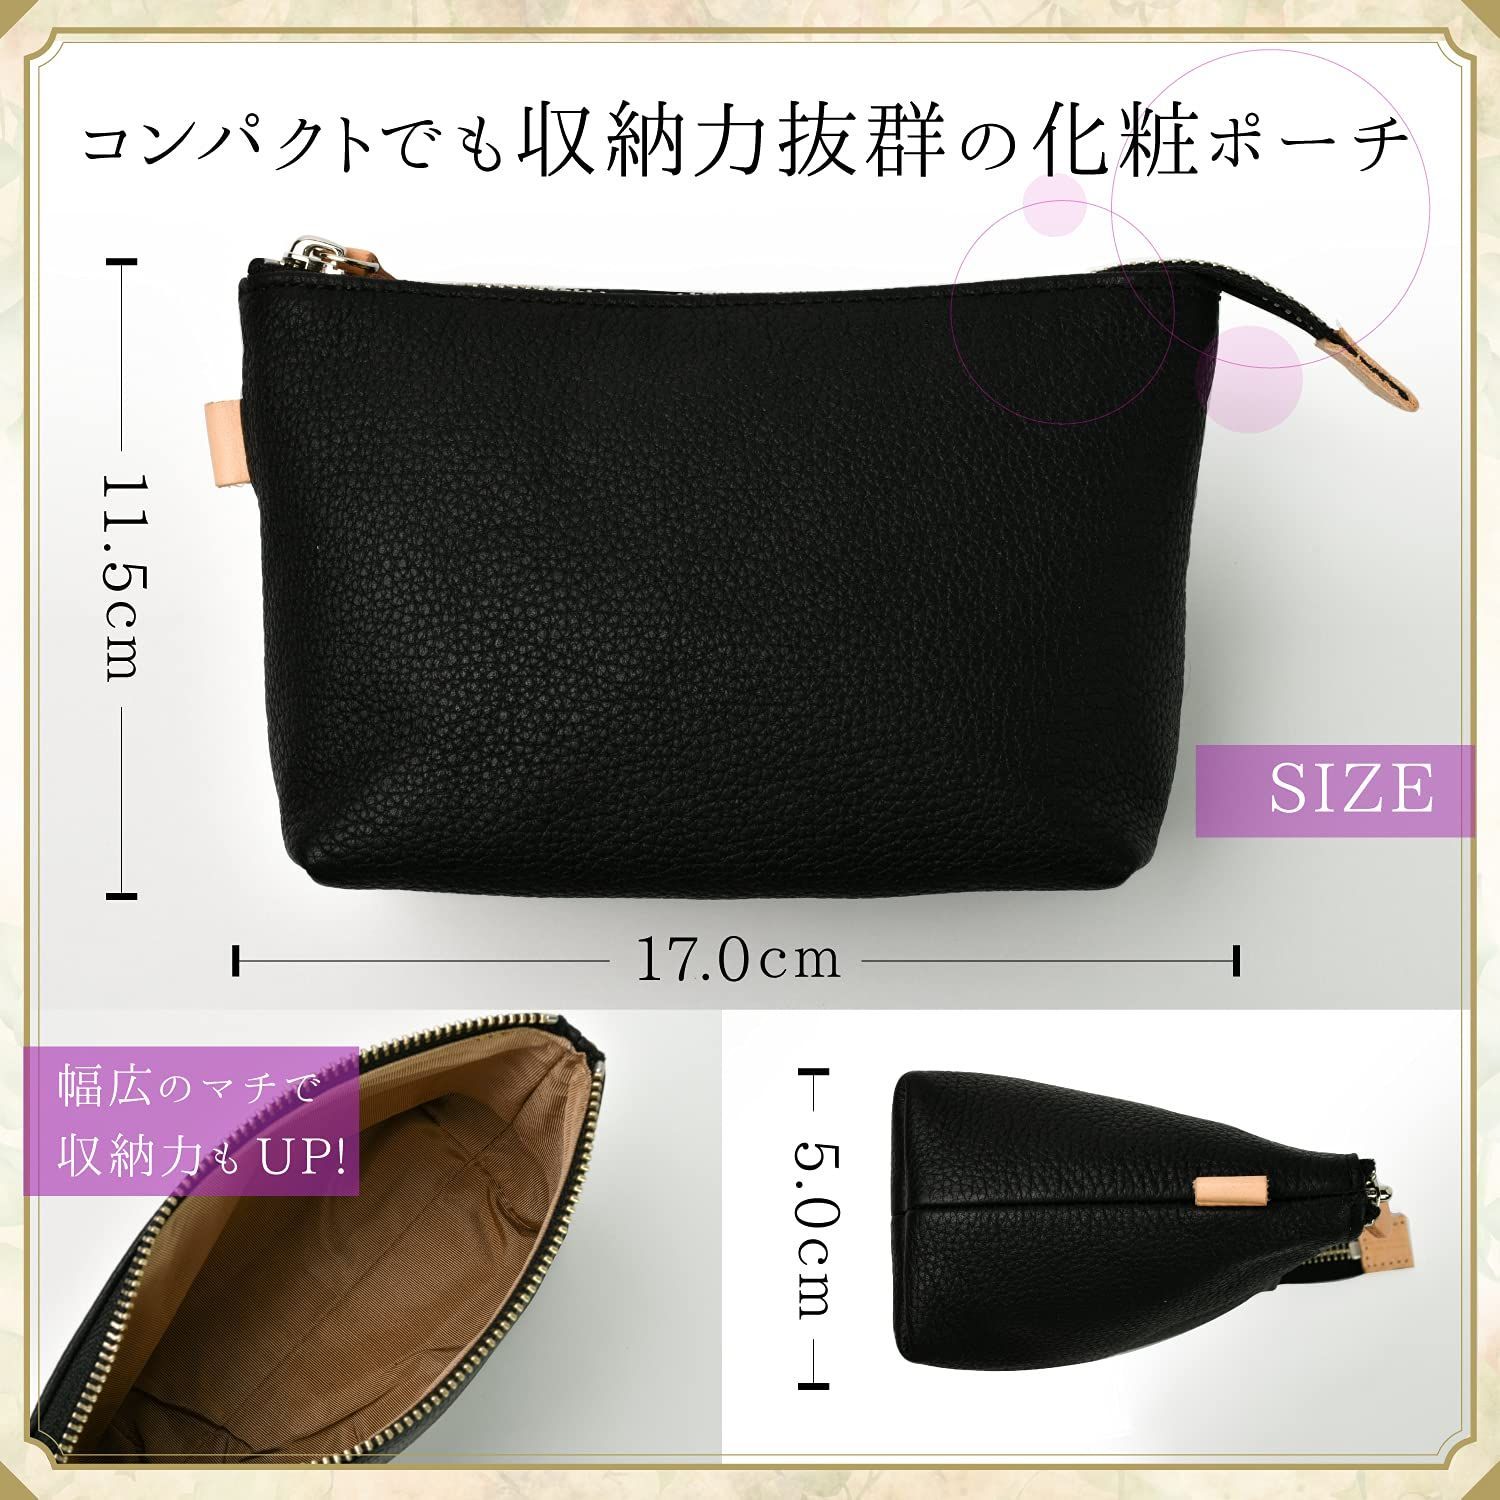 化粧ポーチ レディース 本革 シンプル コンパクト 高級 ミニポーチ 日本製 ブラック